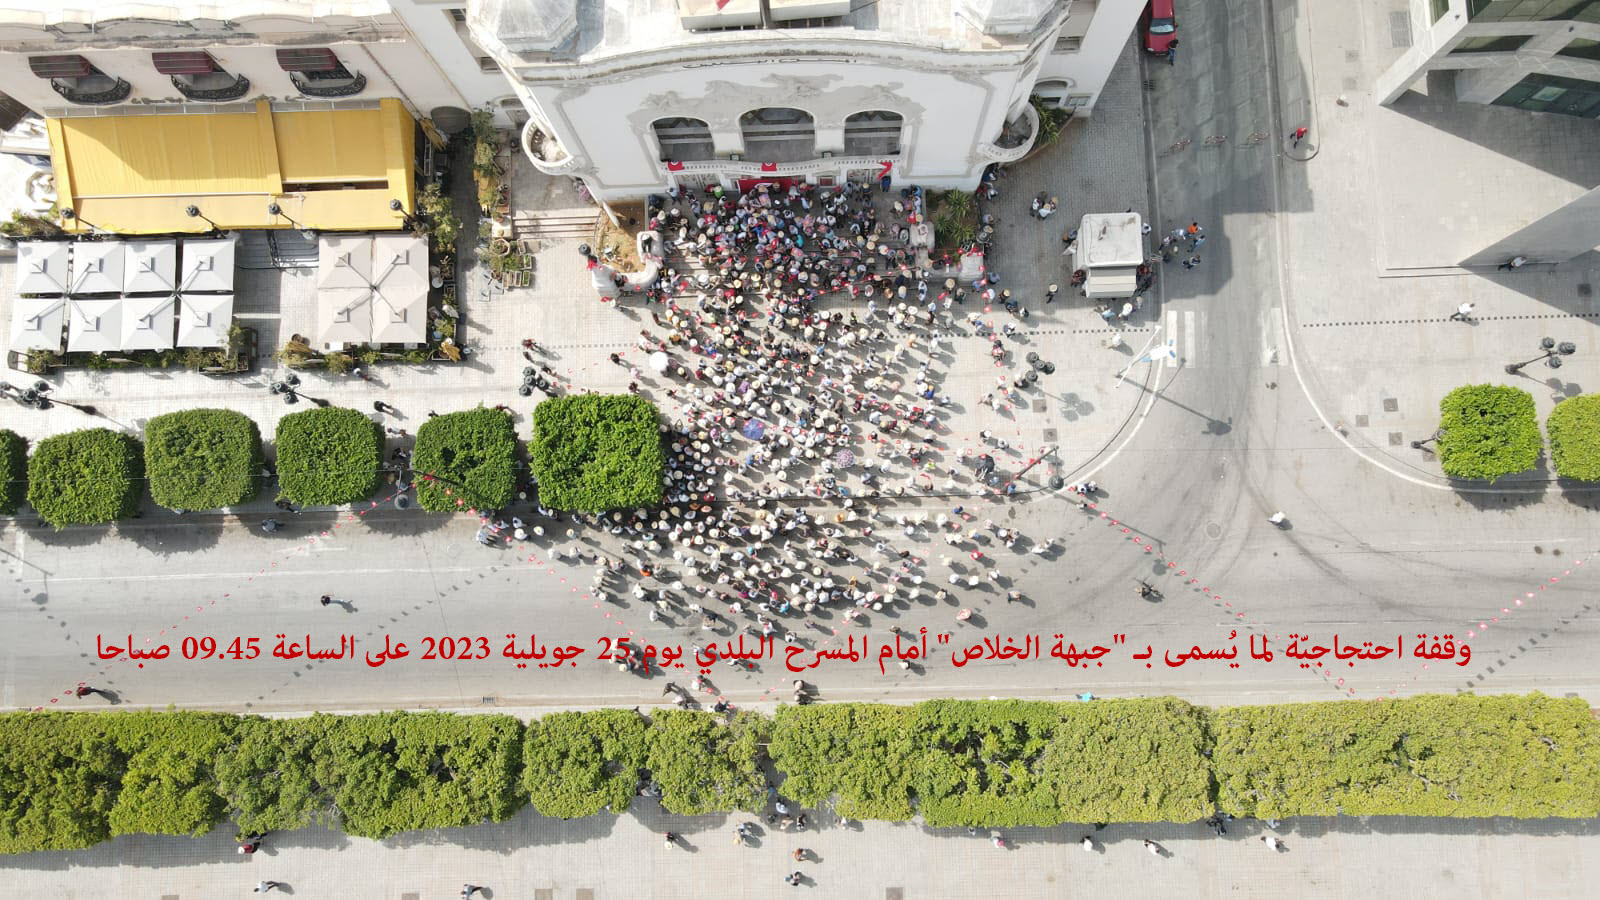 الداخلية تصدر بيانا حول مسيرتي جبهة الخلاص والدستوري الحر